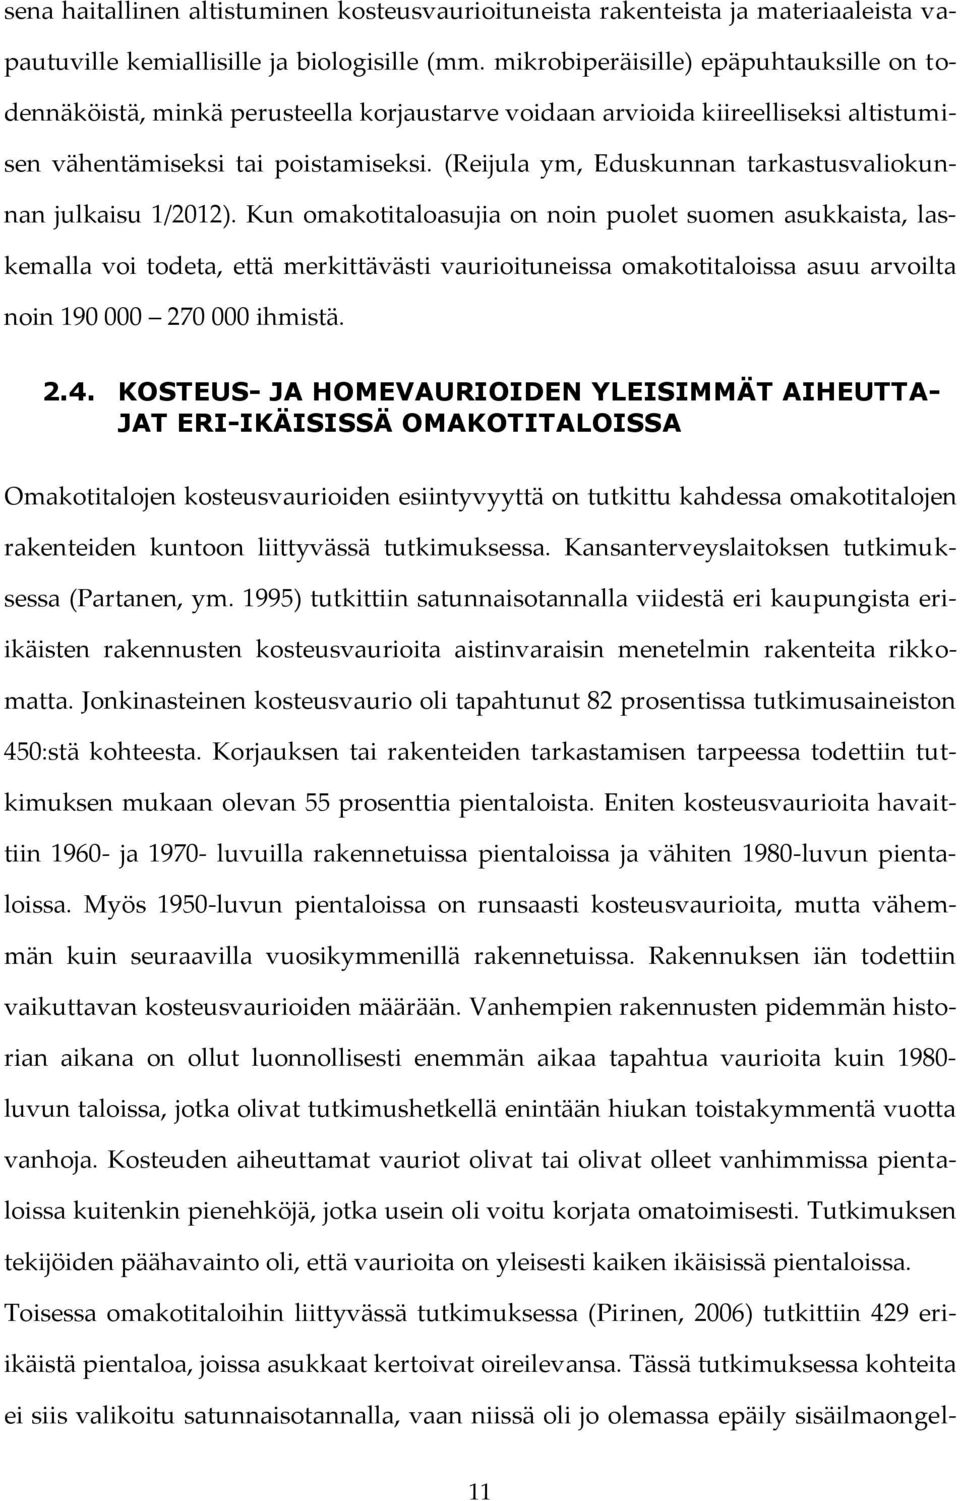 (Reijula ym, Eduskunnan tarkastusvaliokunnan julkaisu 1/2012).